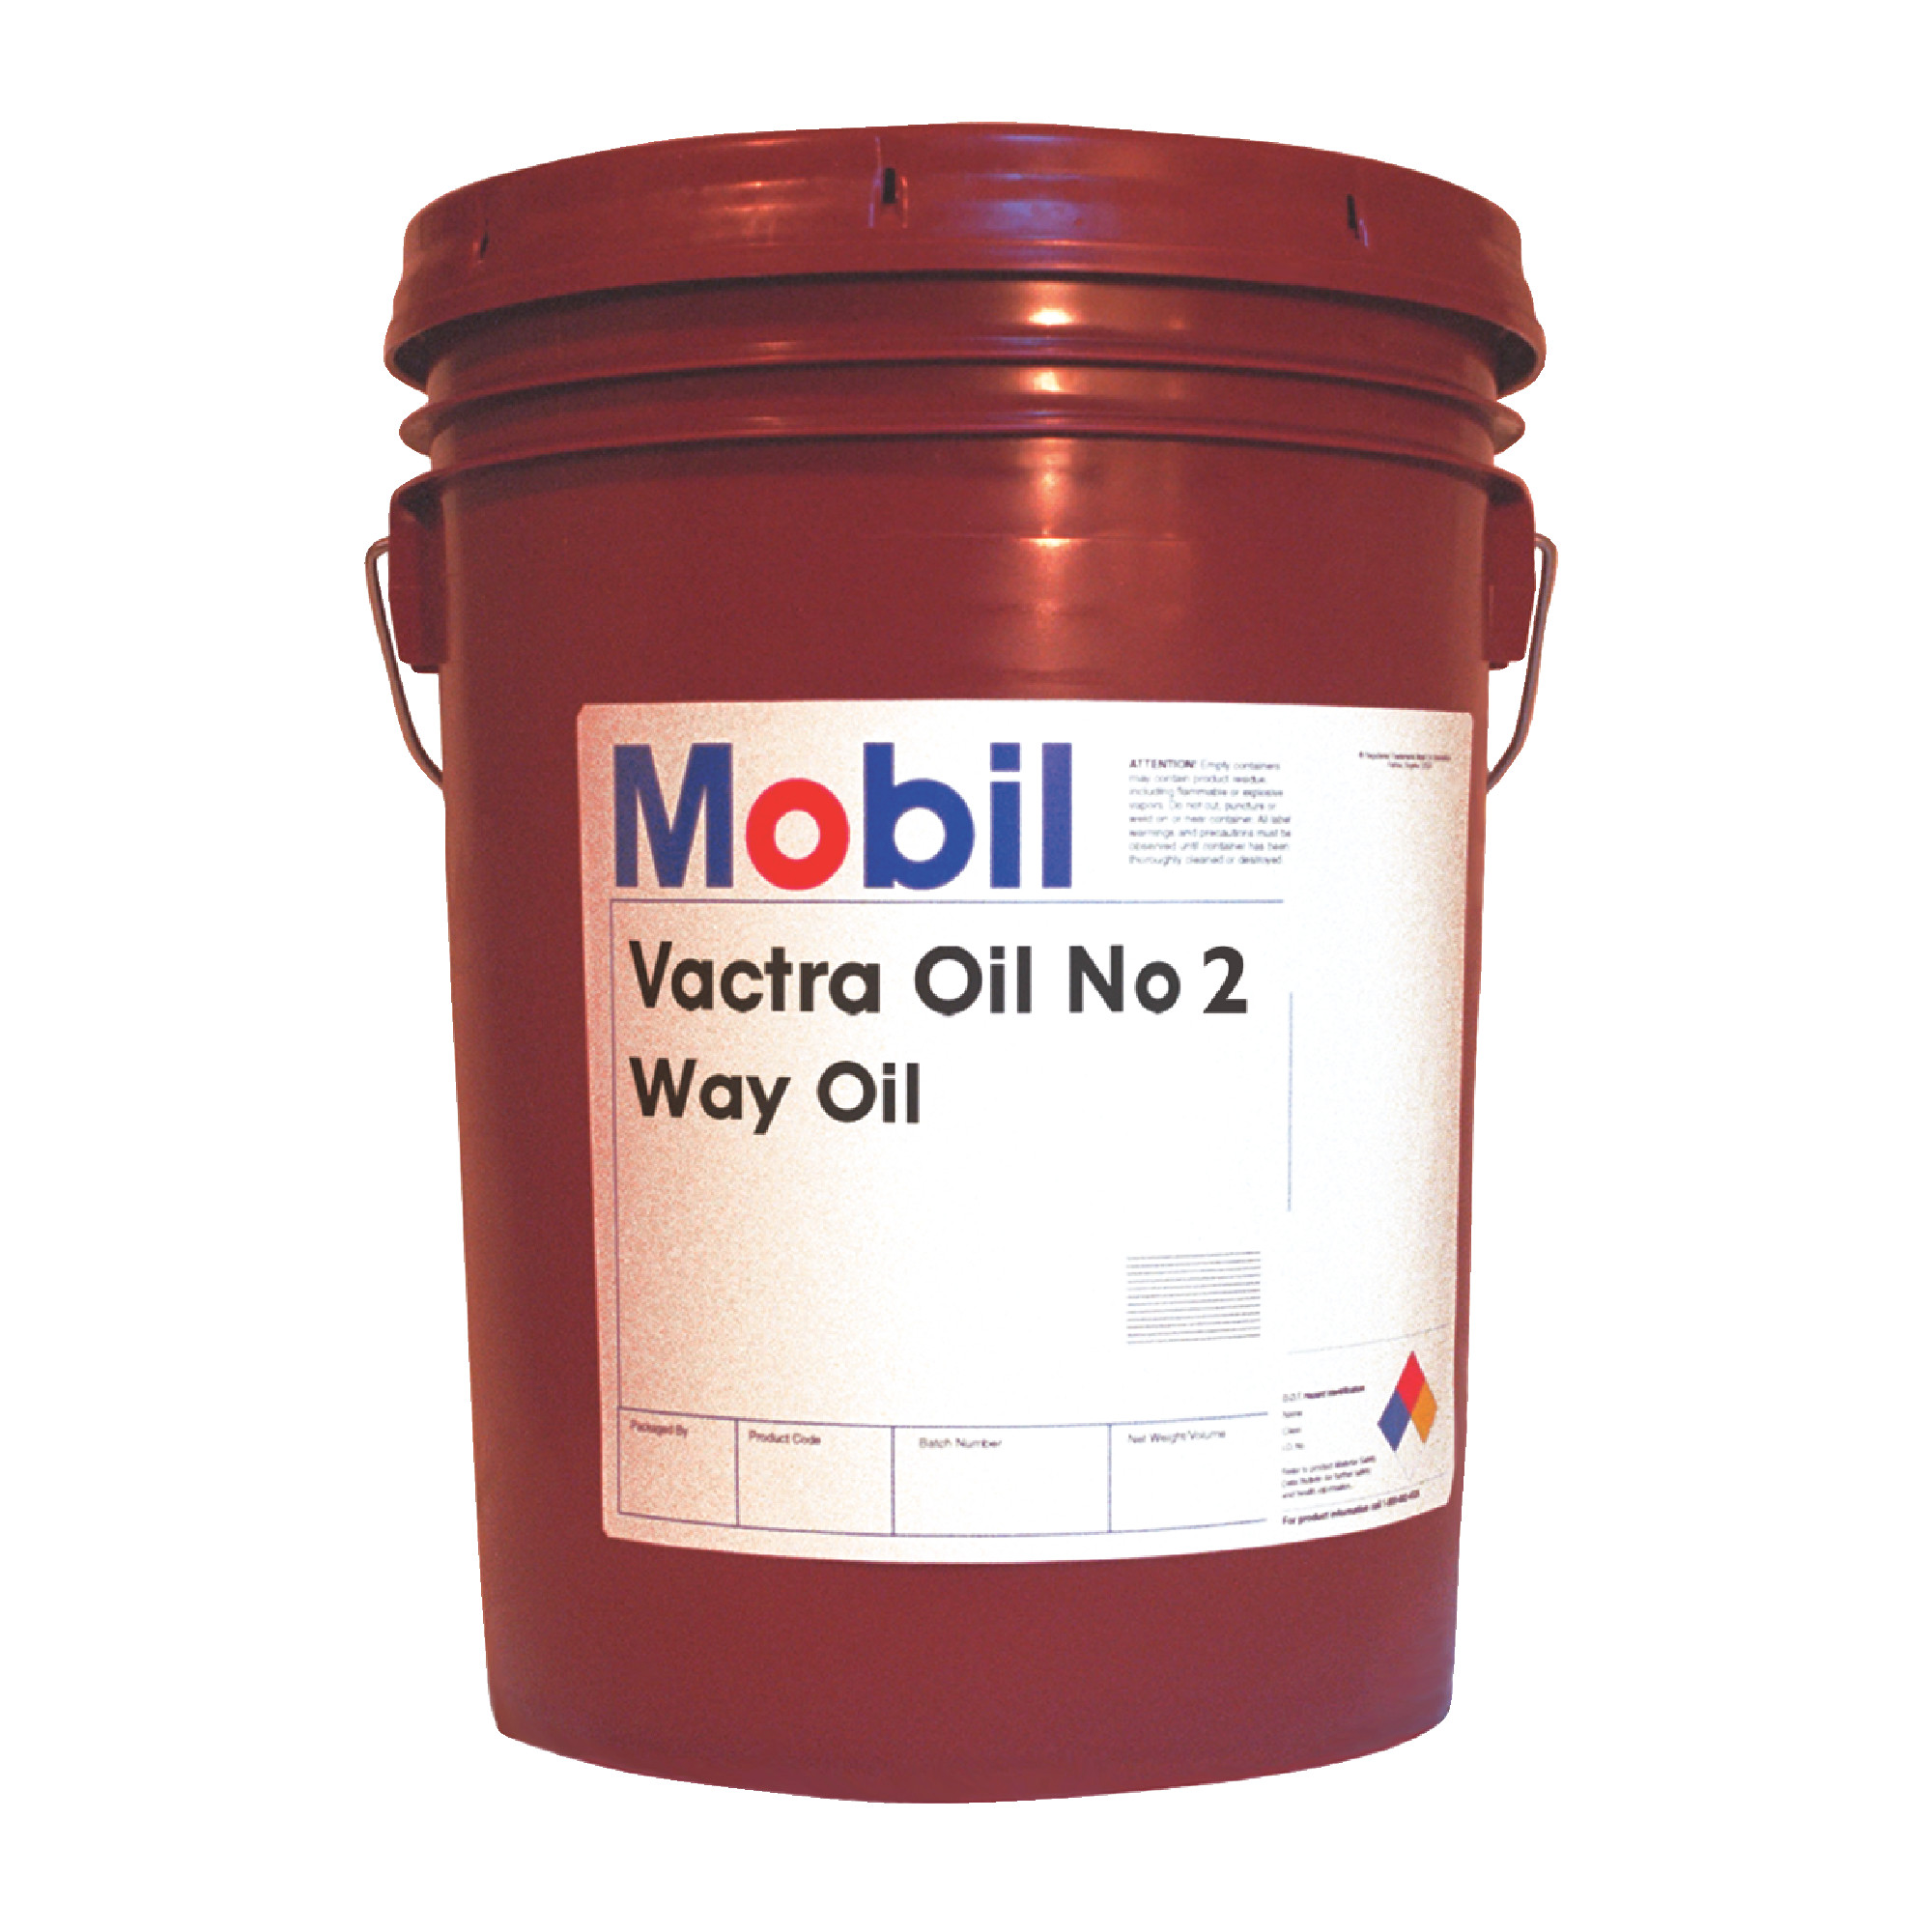 MOBIL - 5 Gallon Vactra Oil #2